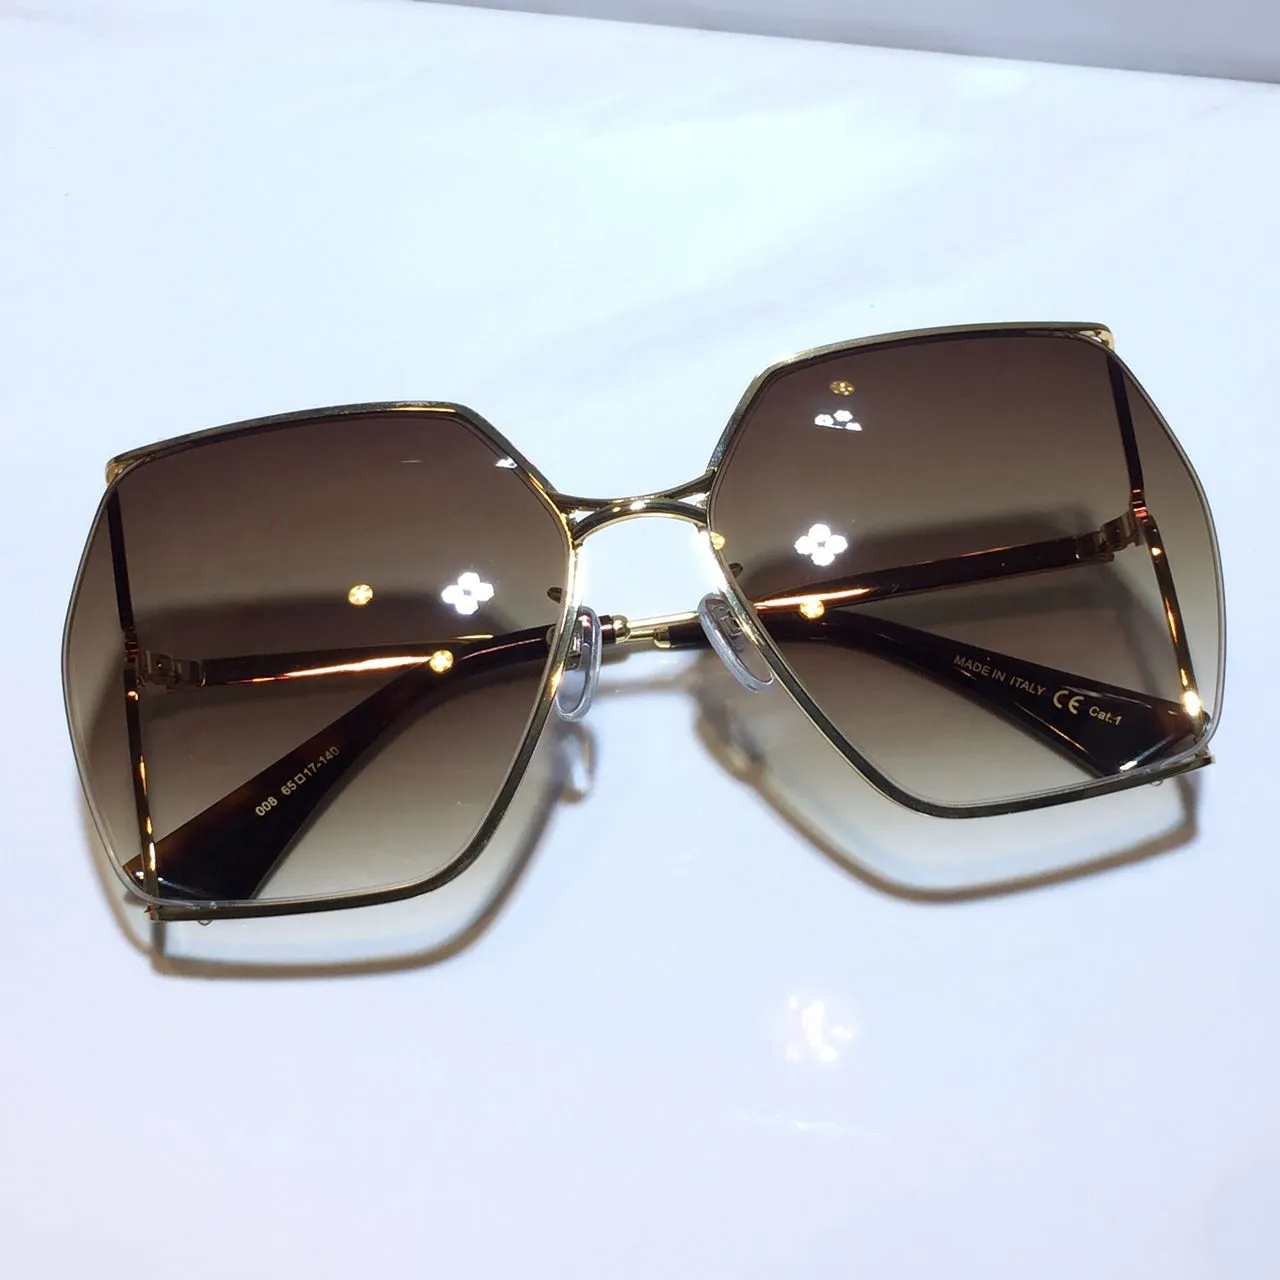 Солнцезащитные очки для женщин, классическая летняя мода 0817, стильная металлическая и планочная оправа, качественные линзы с защитой от ультрафиолета 0817S209C